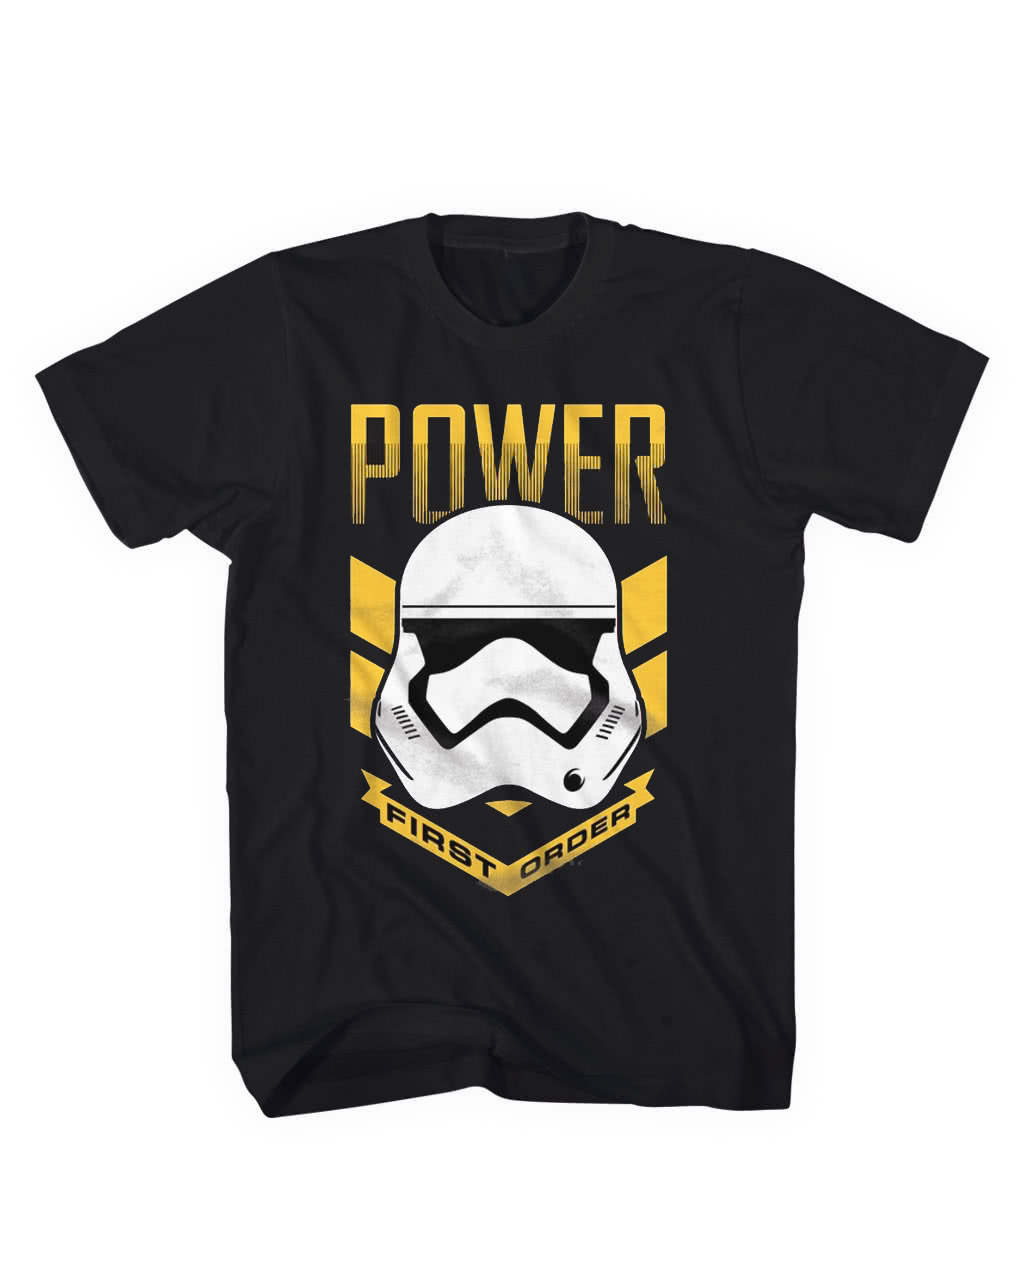 stormtrooper shirt